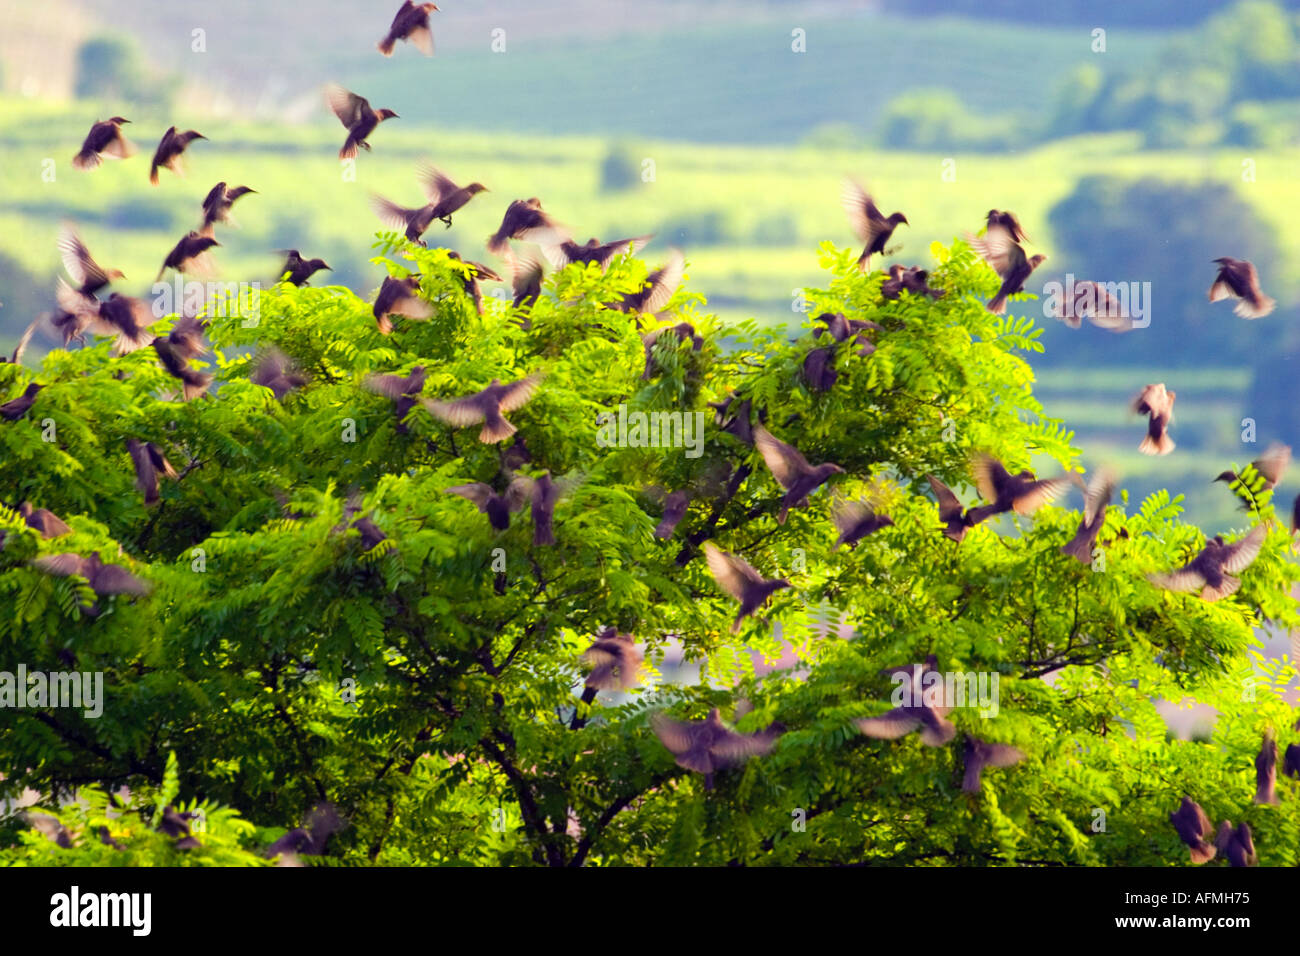 Starling Birds sturnus vulgaris flock of birds in flight Stock Photo